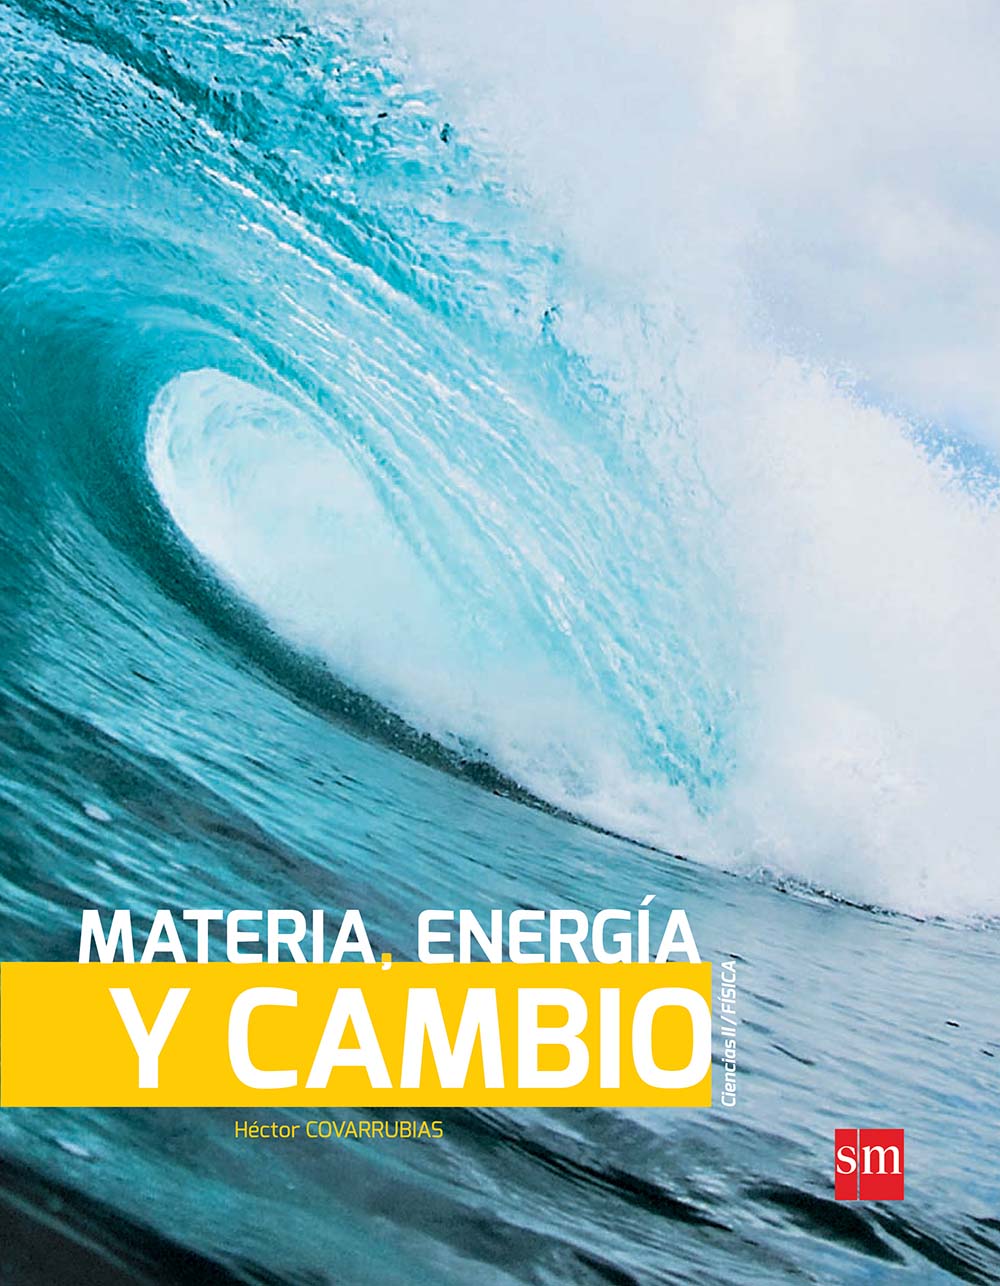 Materia, energía y cambio, Editorial: Ediciones SM, Nivel: Secundaria, Grado: 2